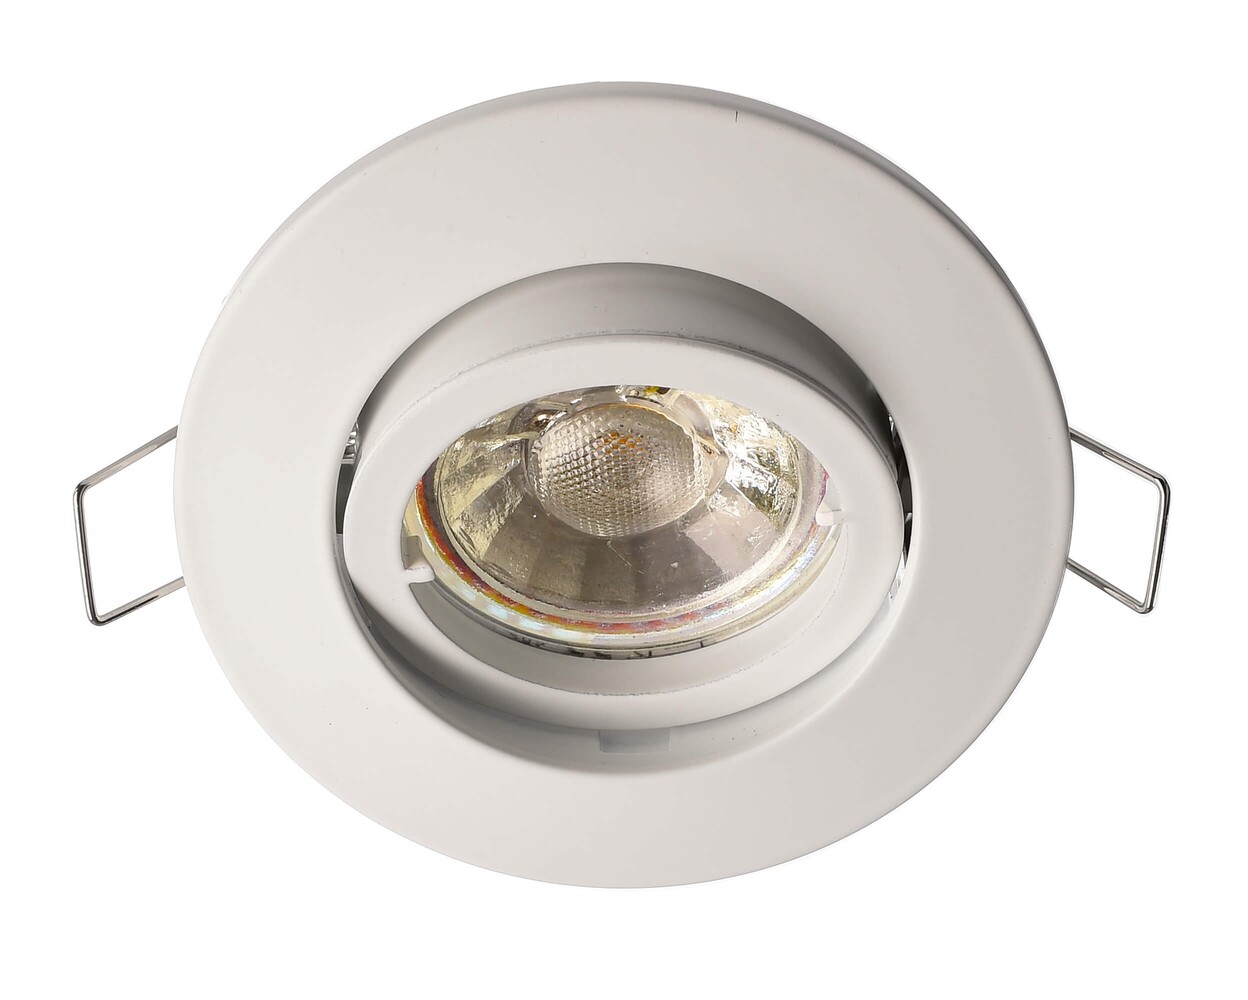 Ein innovativer Ein- und Aufbaurahmen der Marke Deko-Light im runden Design, für spannungskonstante Beleuchtungssysteme